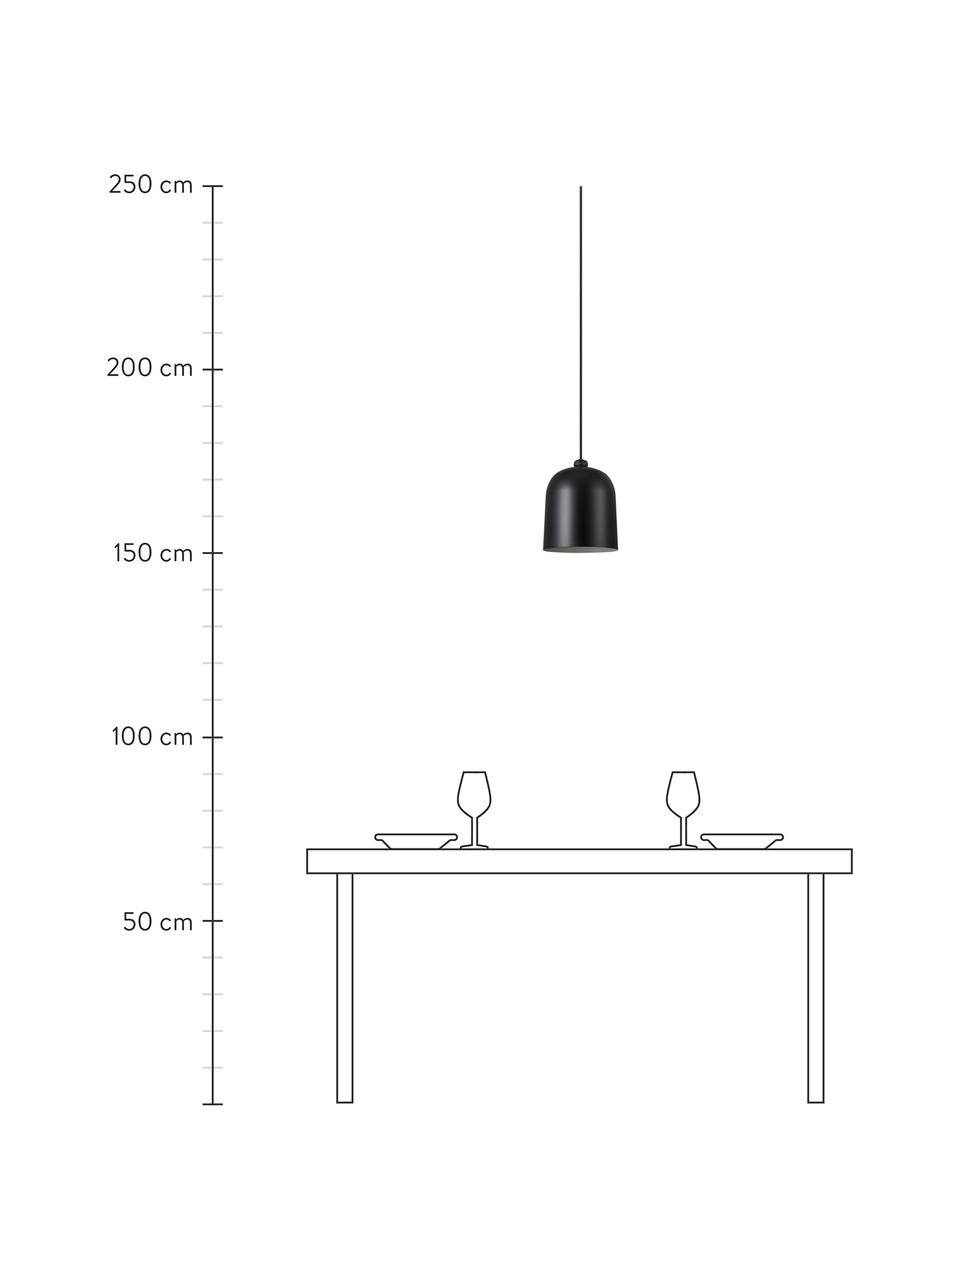 Lampa wisząca w stylu industrial Angle, Czarny, Ø 21 x W 32 cm